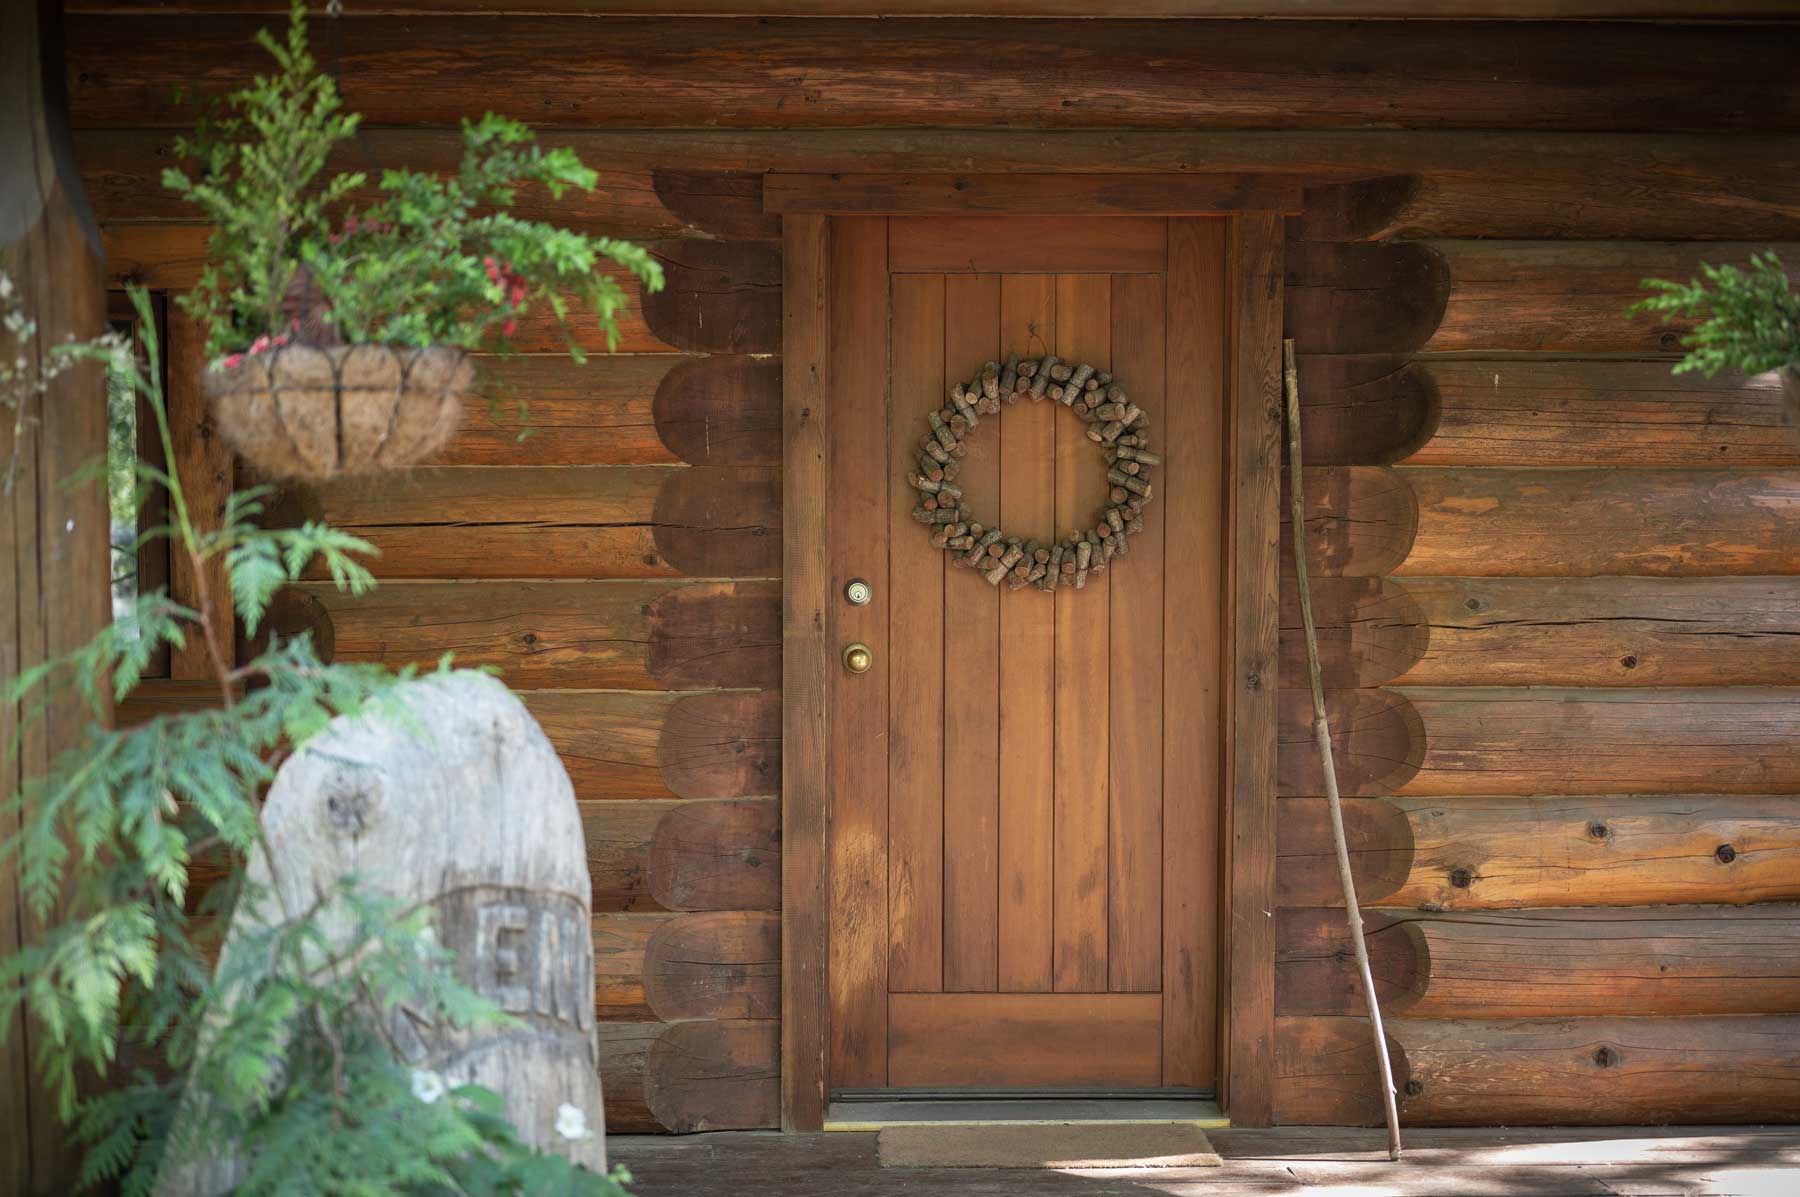 Larch Hills cabin front door